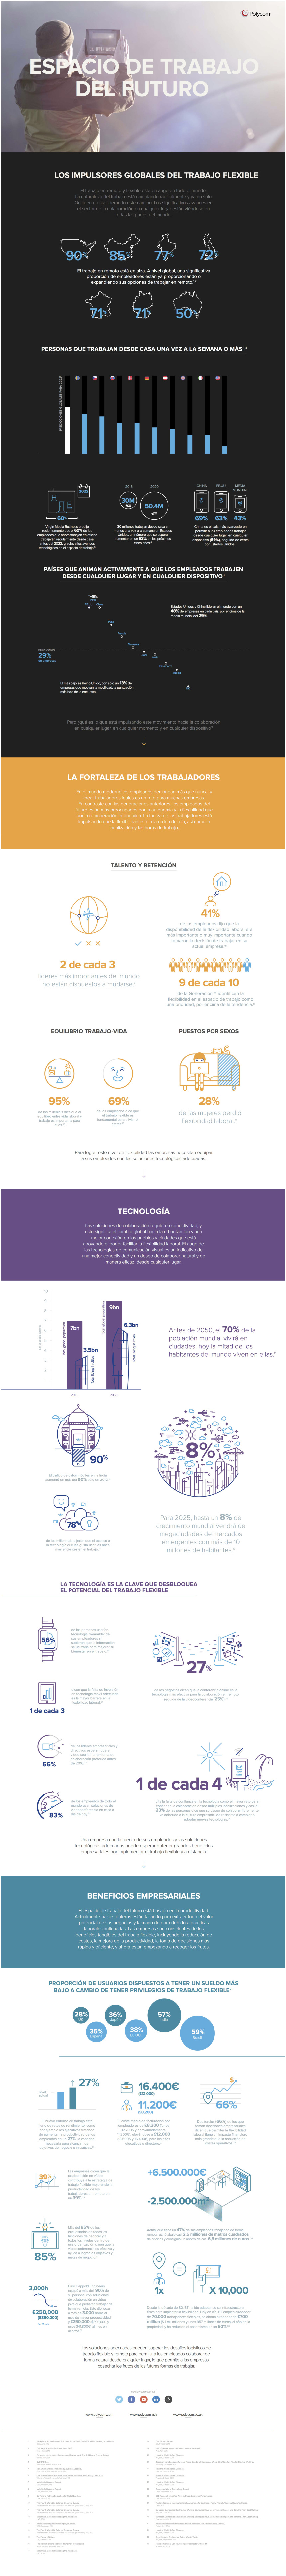 Infografia - Cómo será el Espacio de Trabajo del Futuro #infografia #infographic #rrhh - TICs y Formación